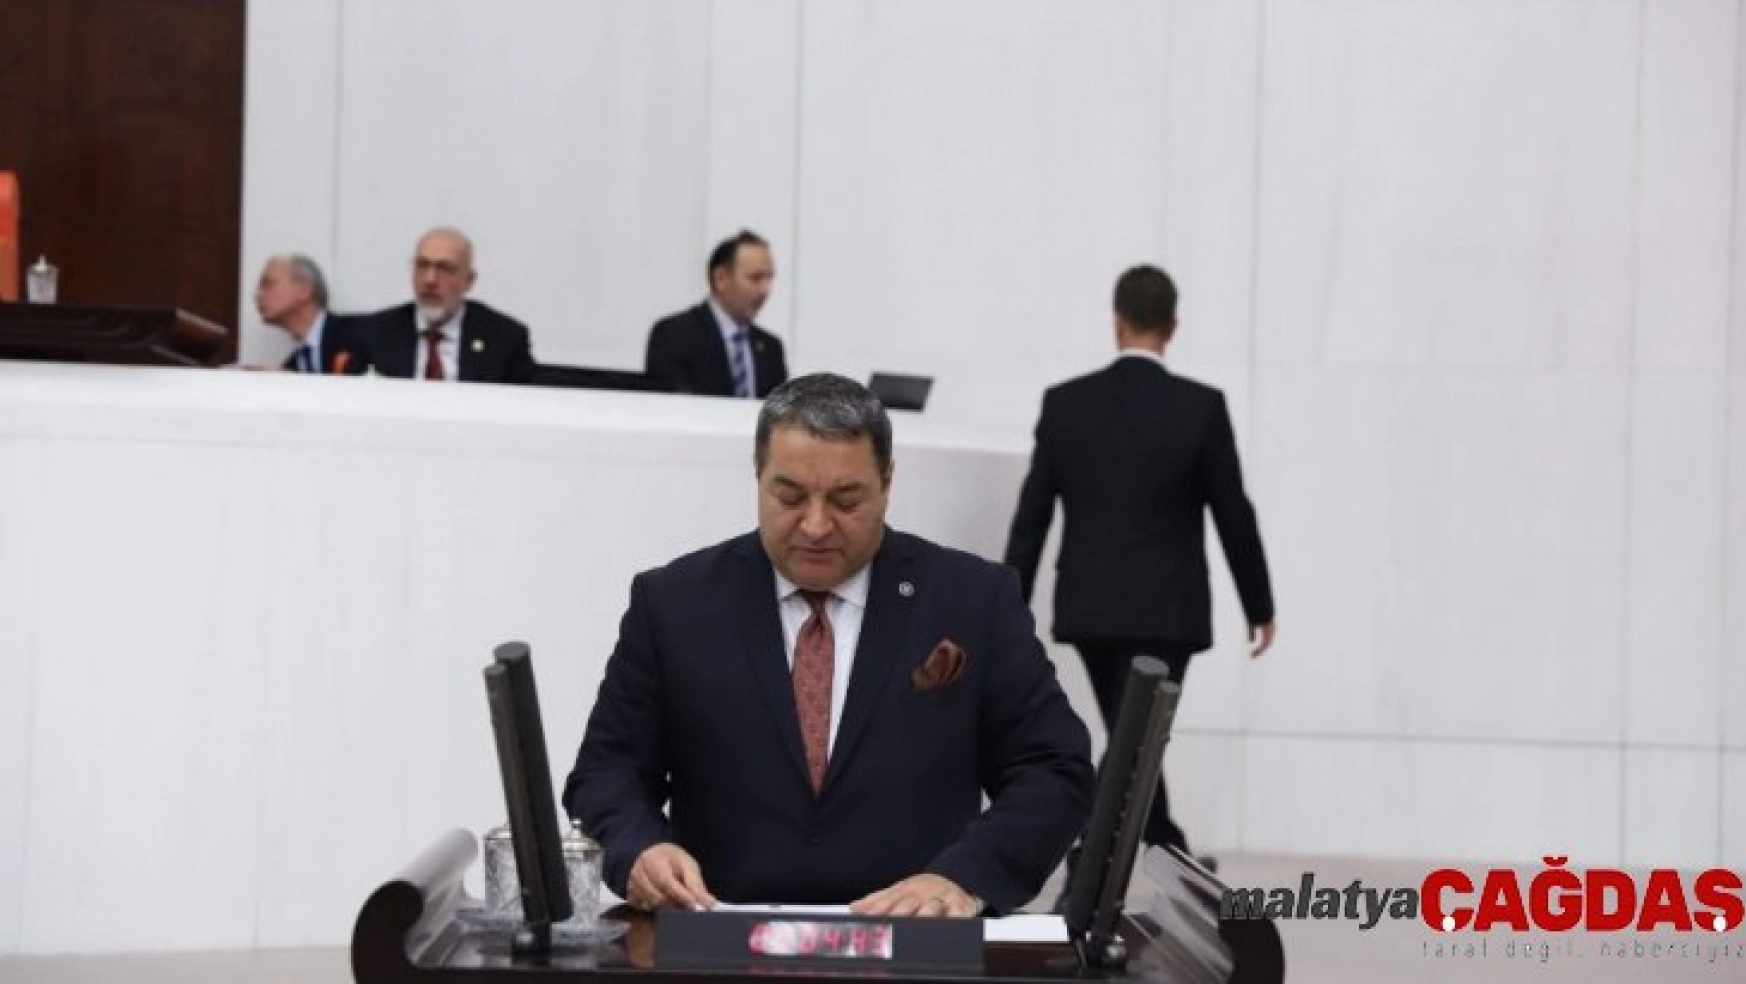 Milletvekili Fendoğlu, sorun ve talepleri dile getirdi